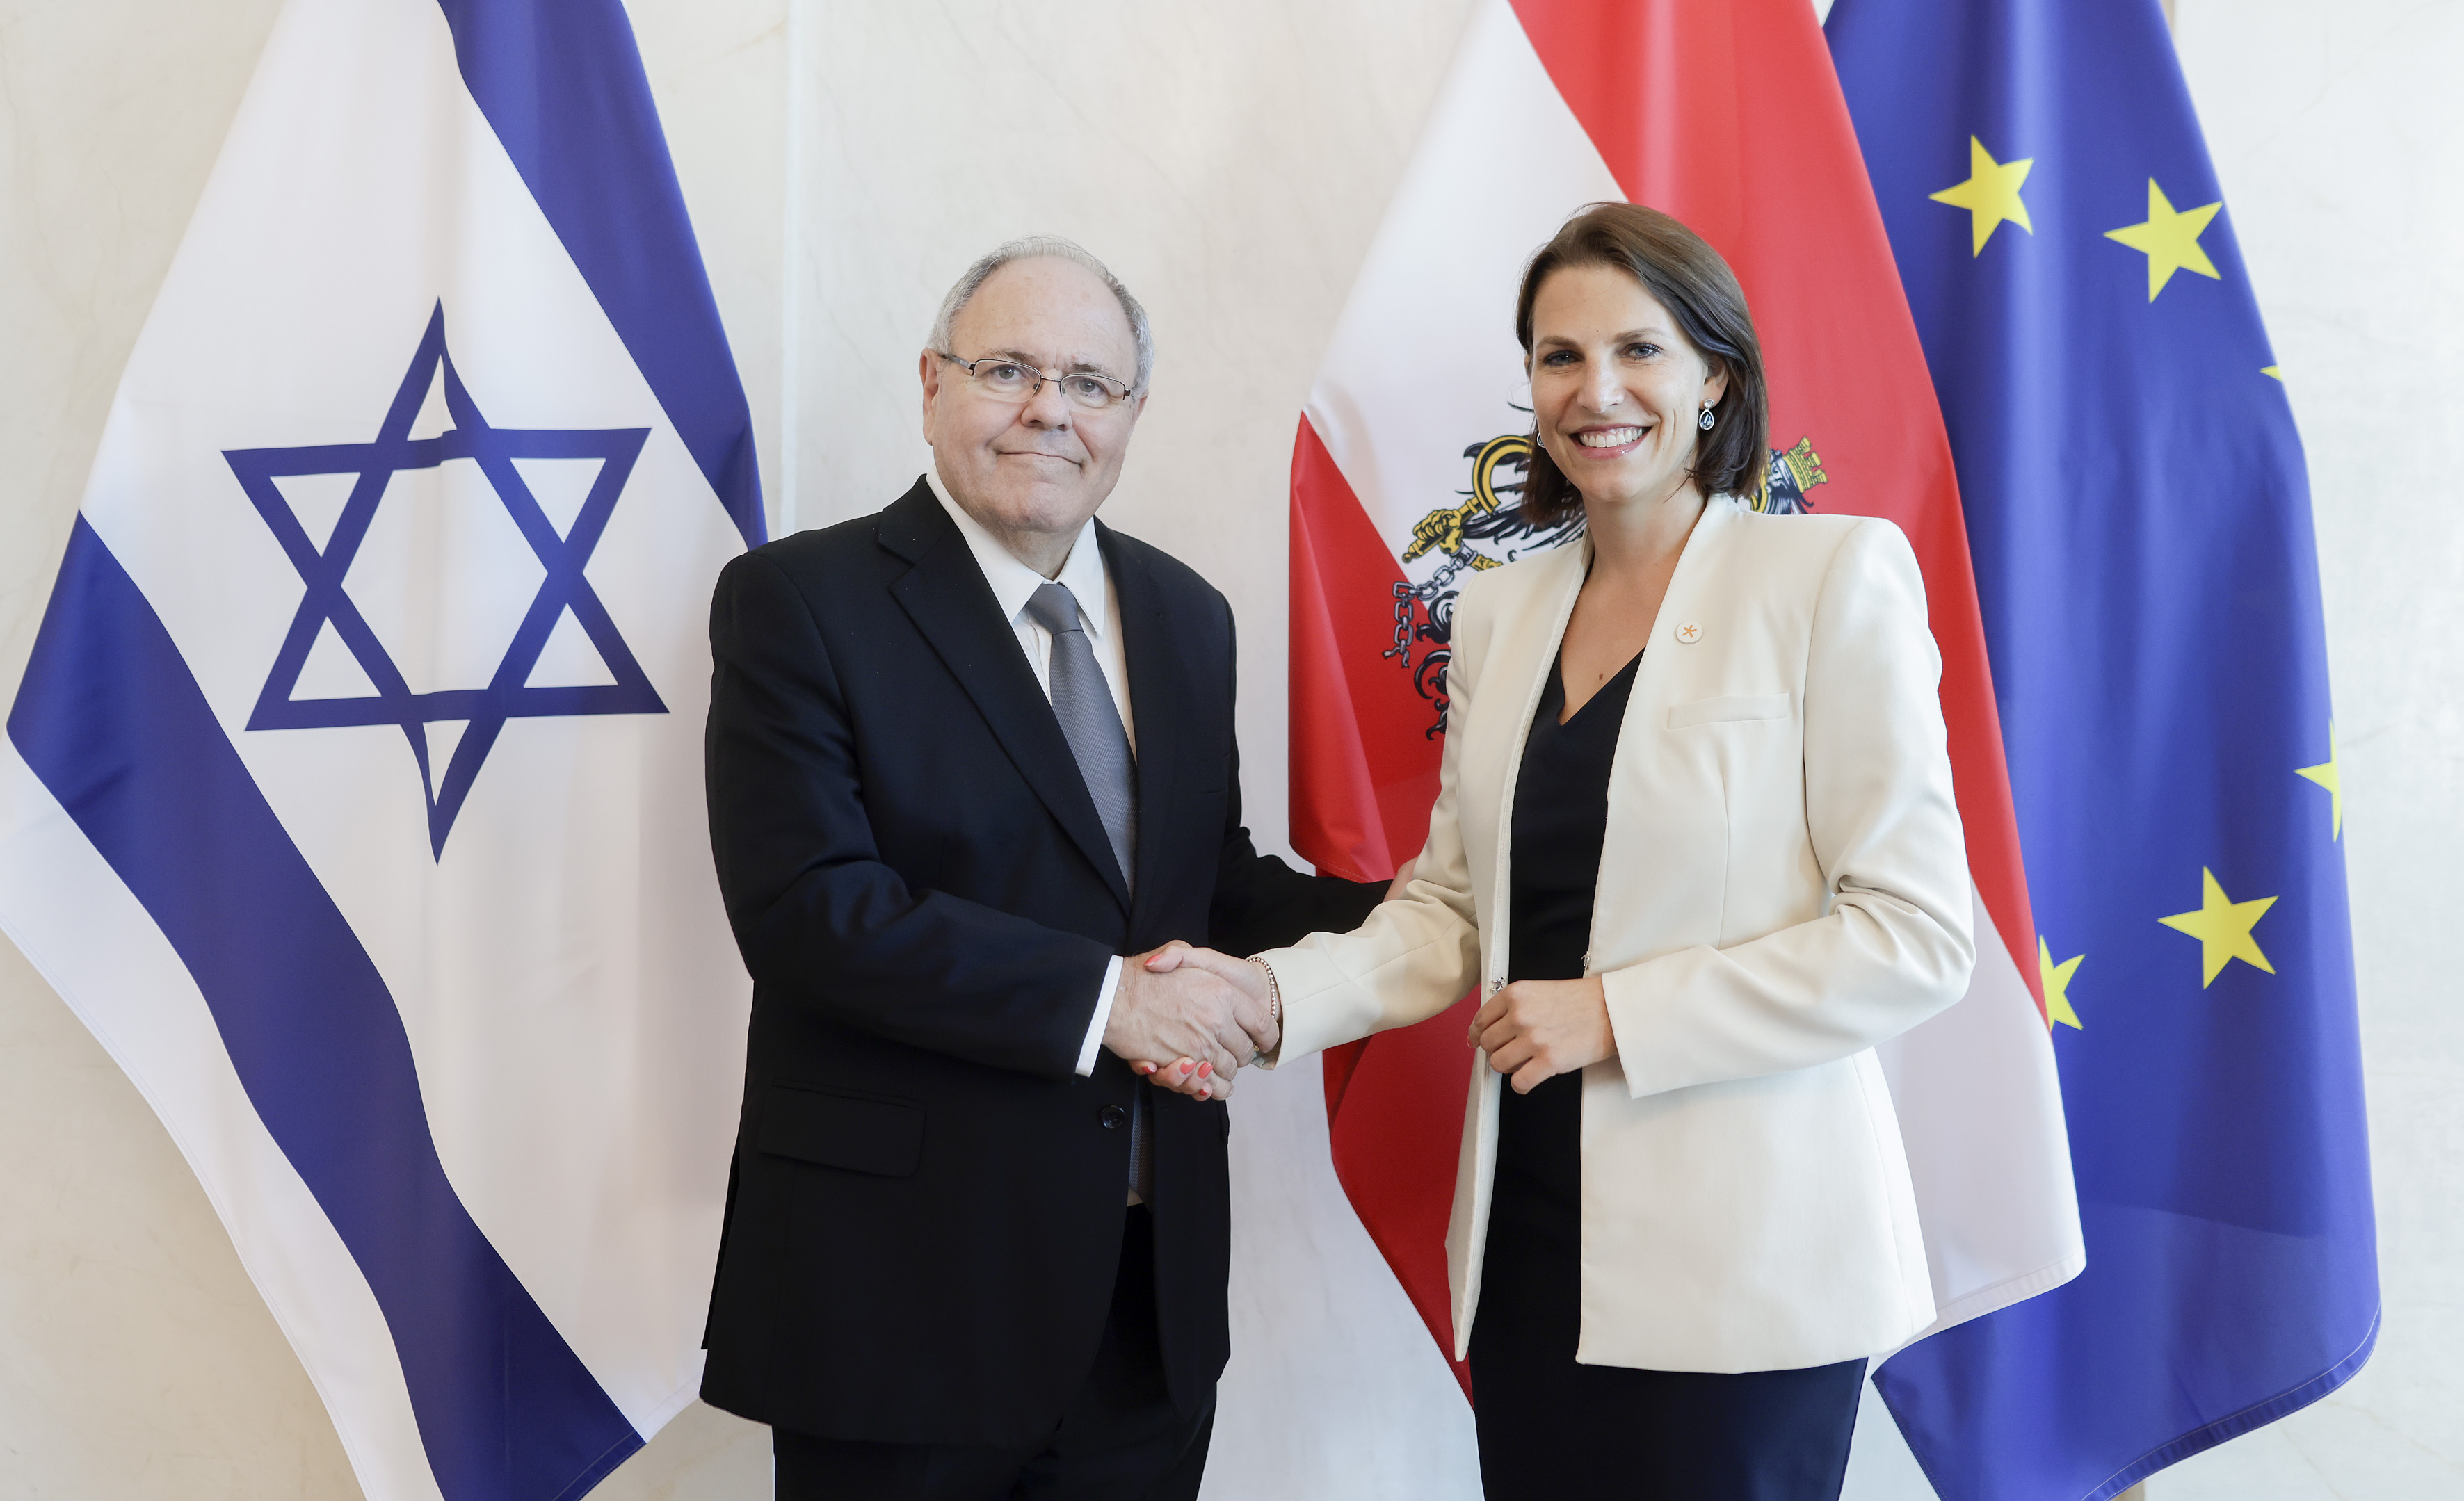 Der Vorsitzende von Yad Vashem, Dani Dayan, trifft die österreichische Ministerin Karoline Edstadler während seines Besuchs in Wien